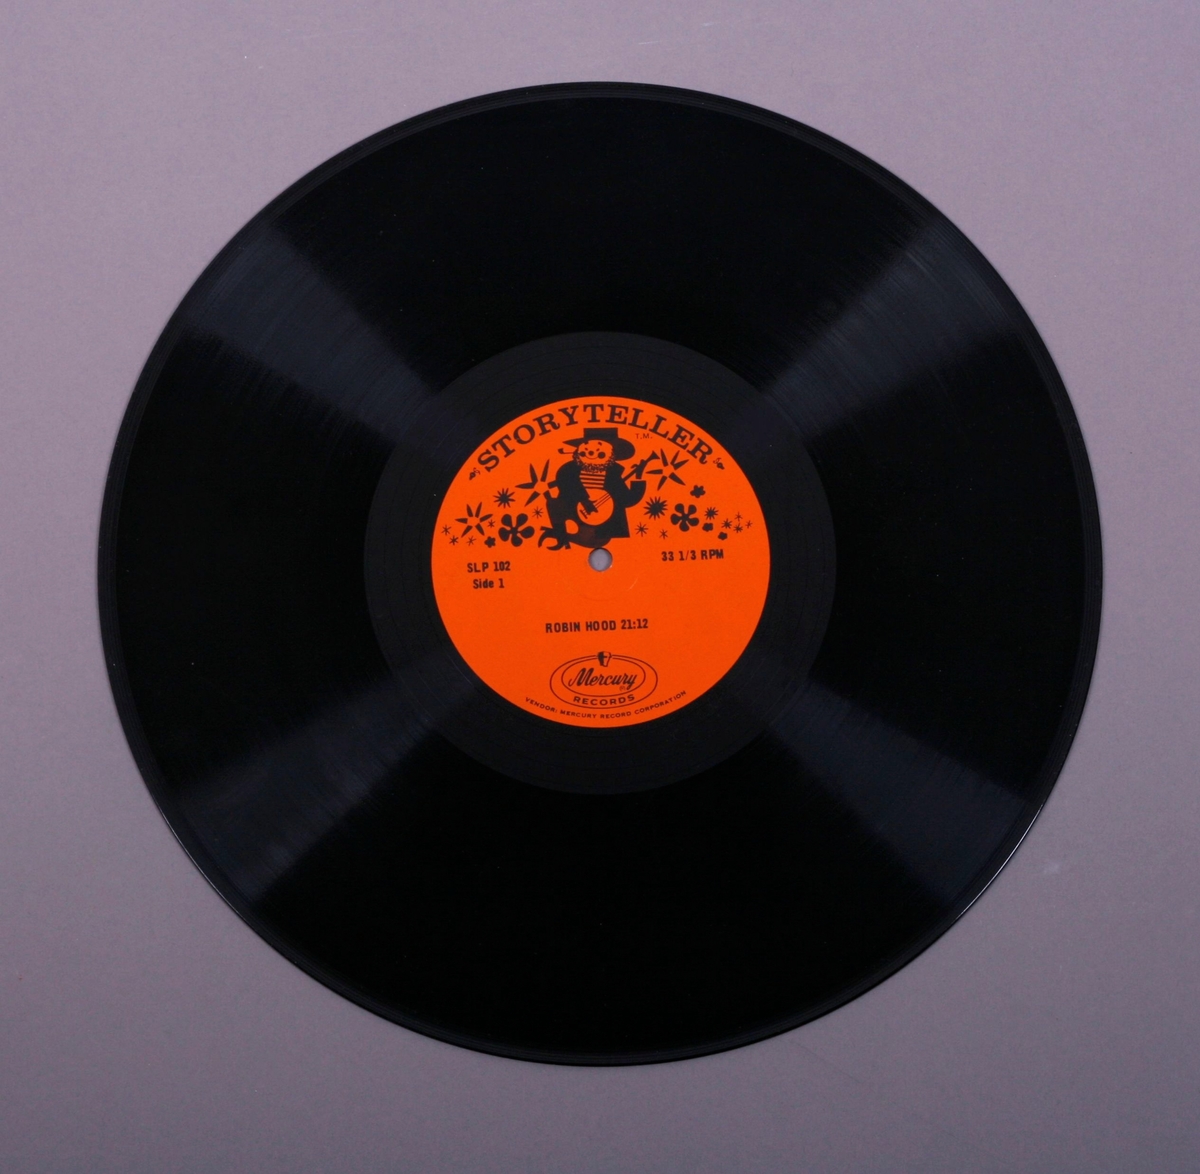 Grammofonplate i svart vinyl og plateomslag i papp.